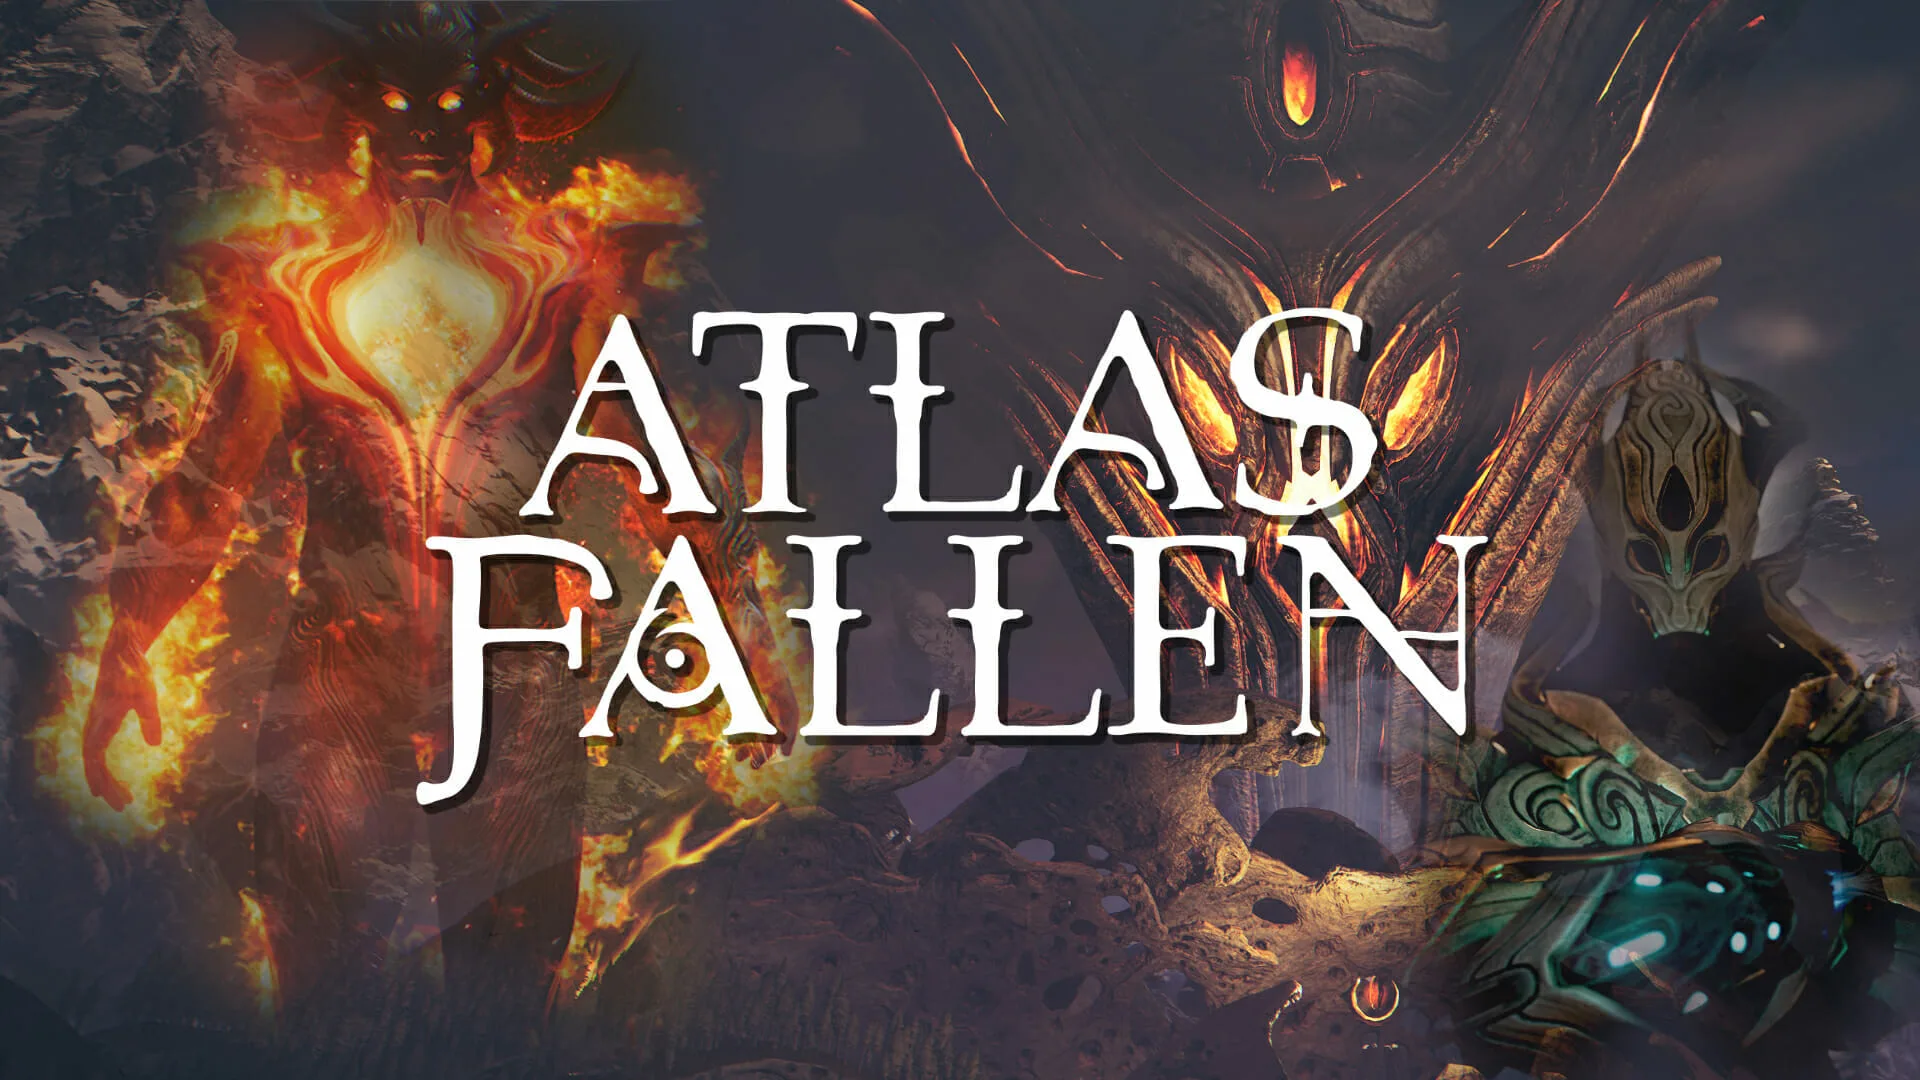 Atlas_Fallen_Titel